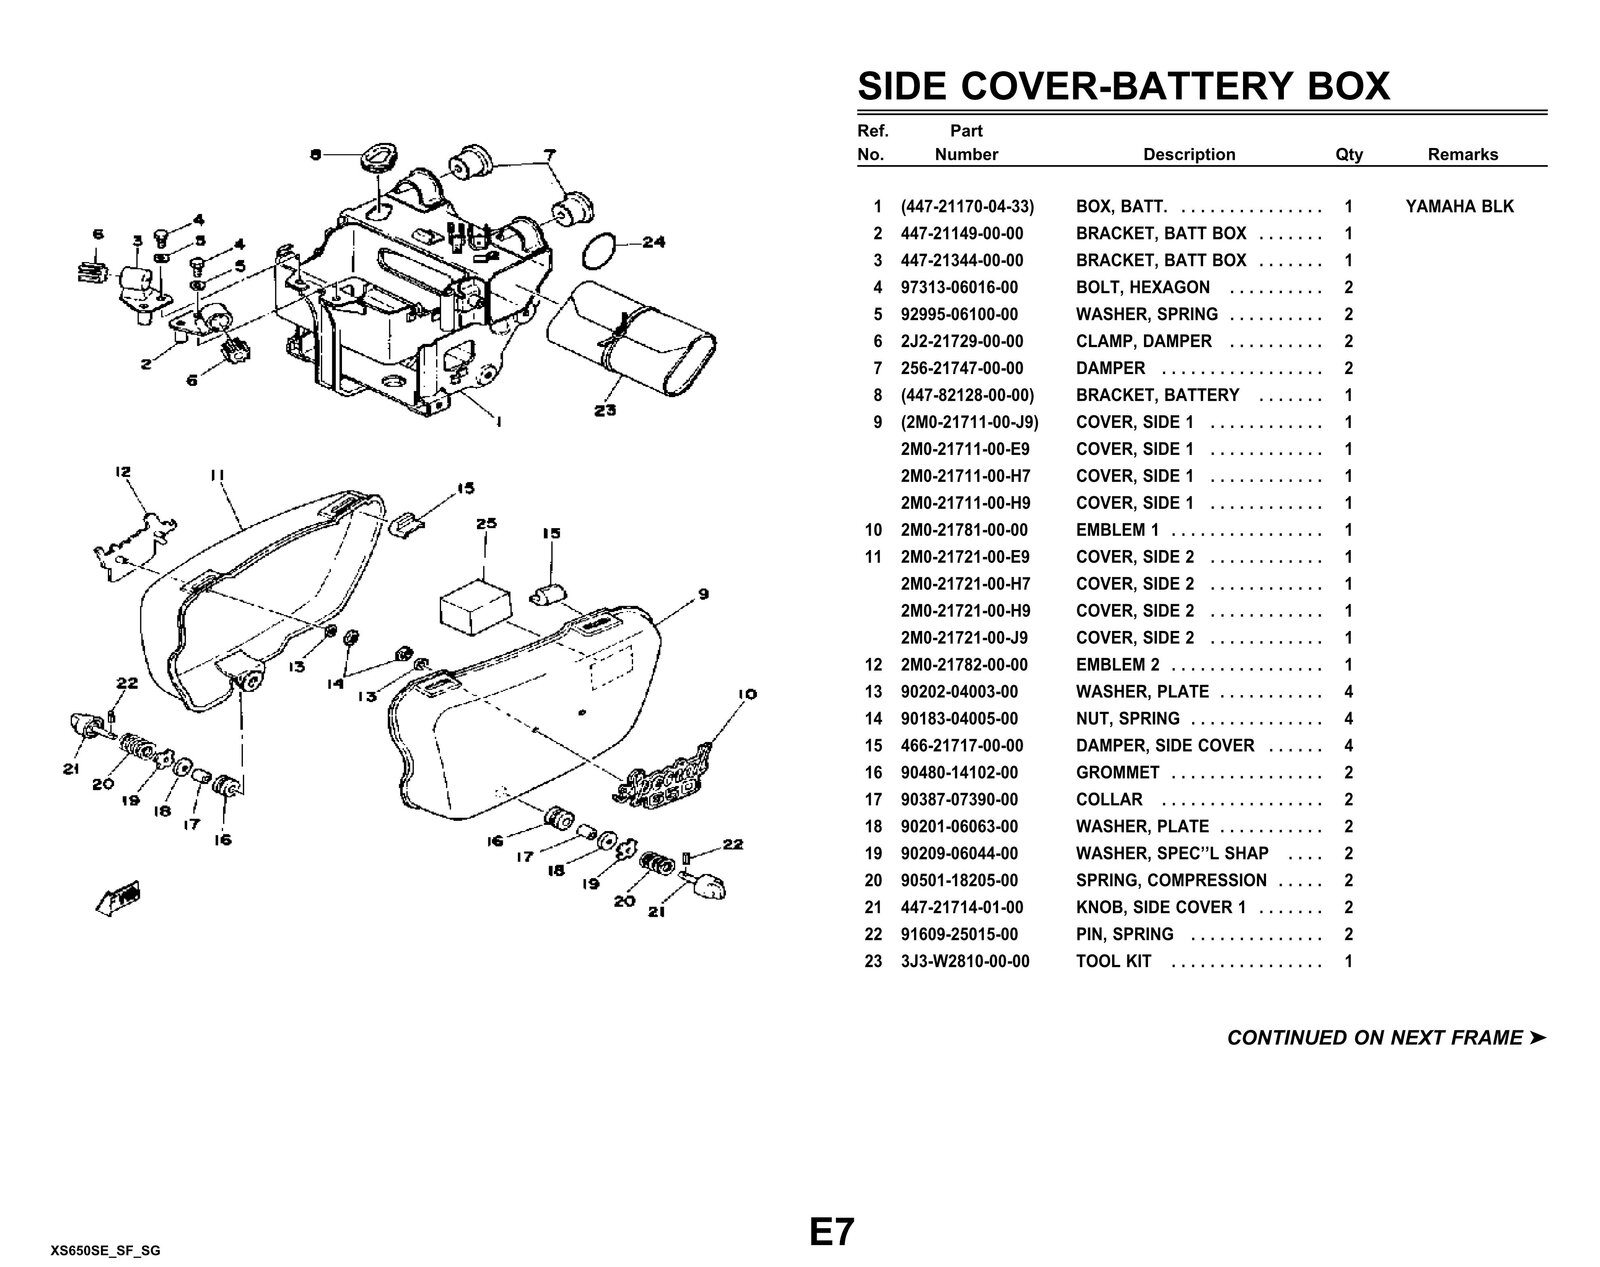 78-79-80 E-SF-SG parts  Manualt055 055.jpg